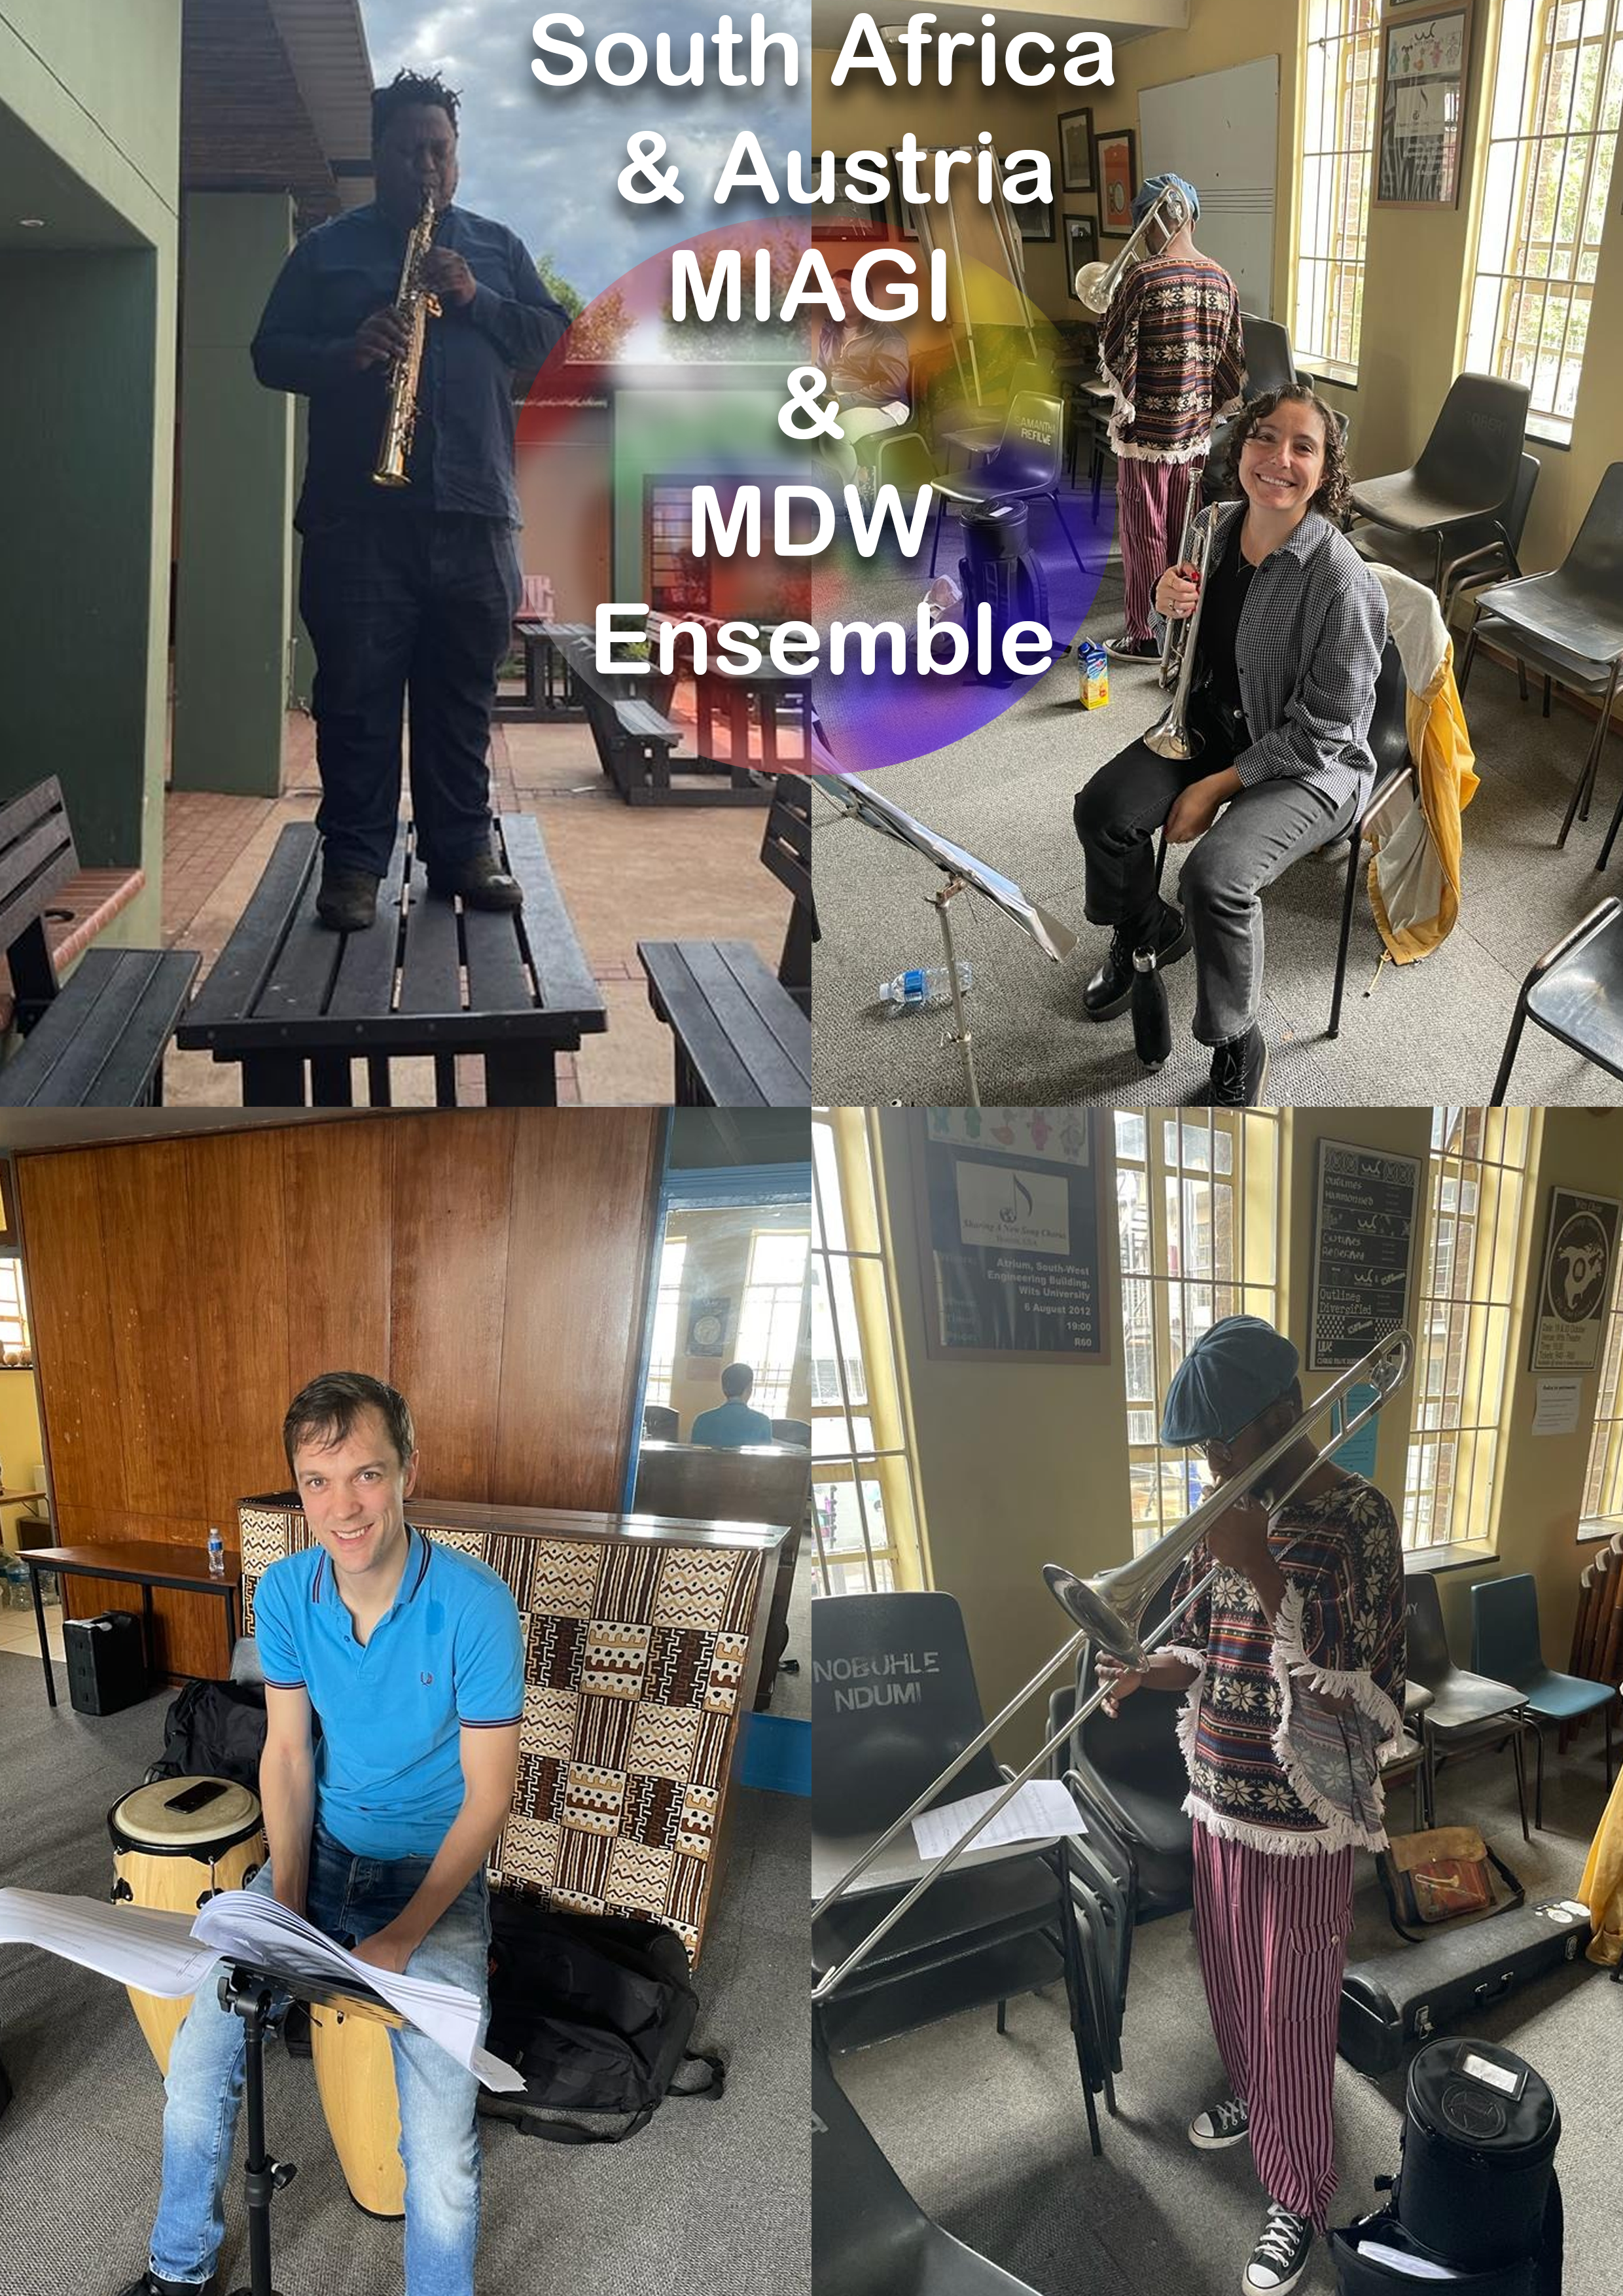 MIAGI & MDW Ensemble